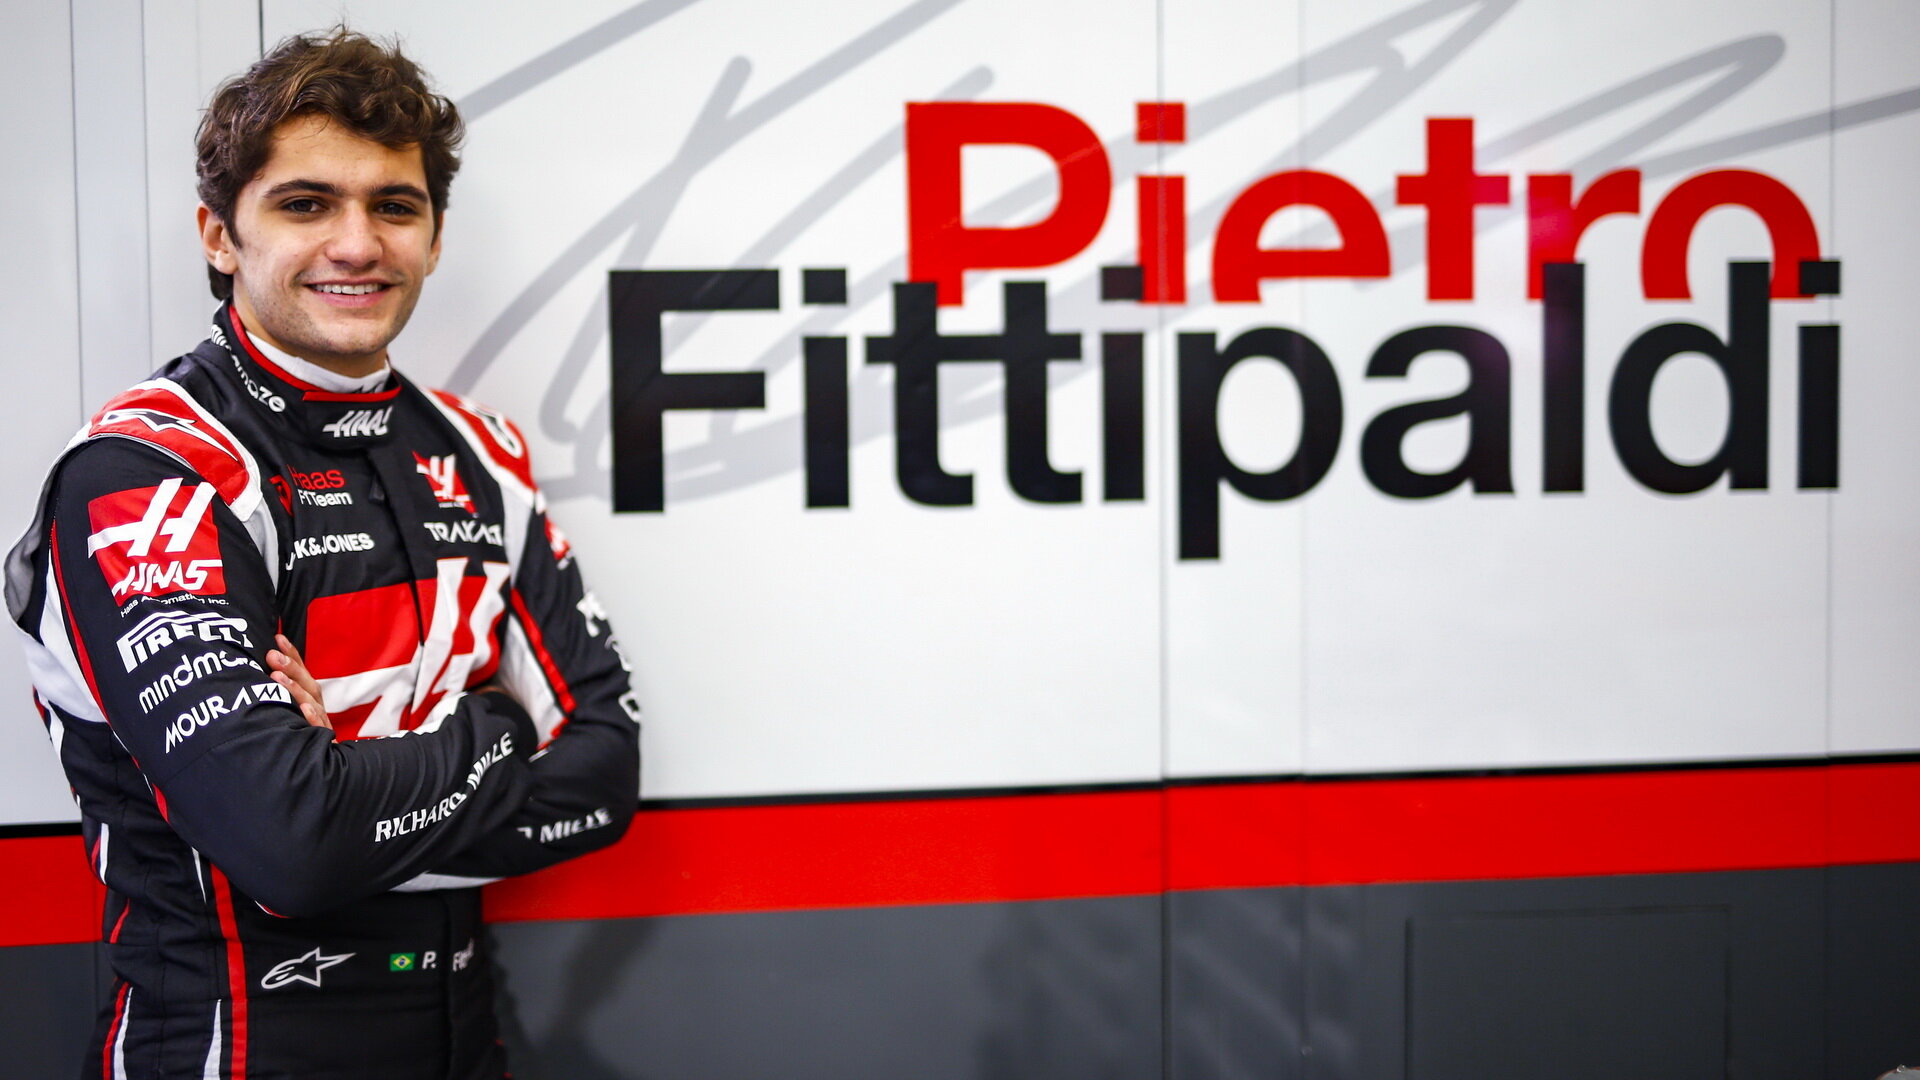 Pietro Fittipaldi při pátečním tréninku v Sáchiru